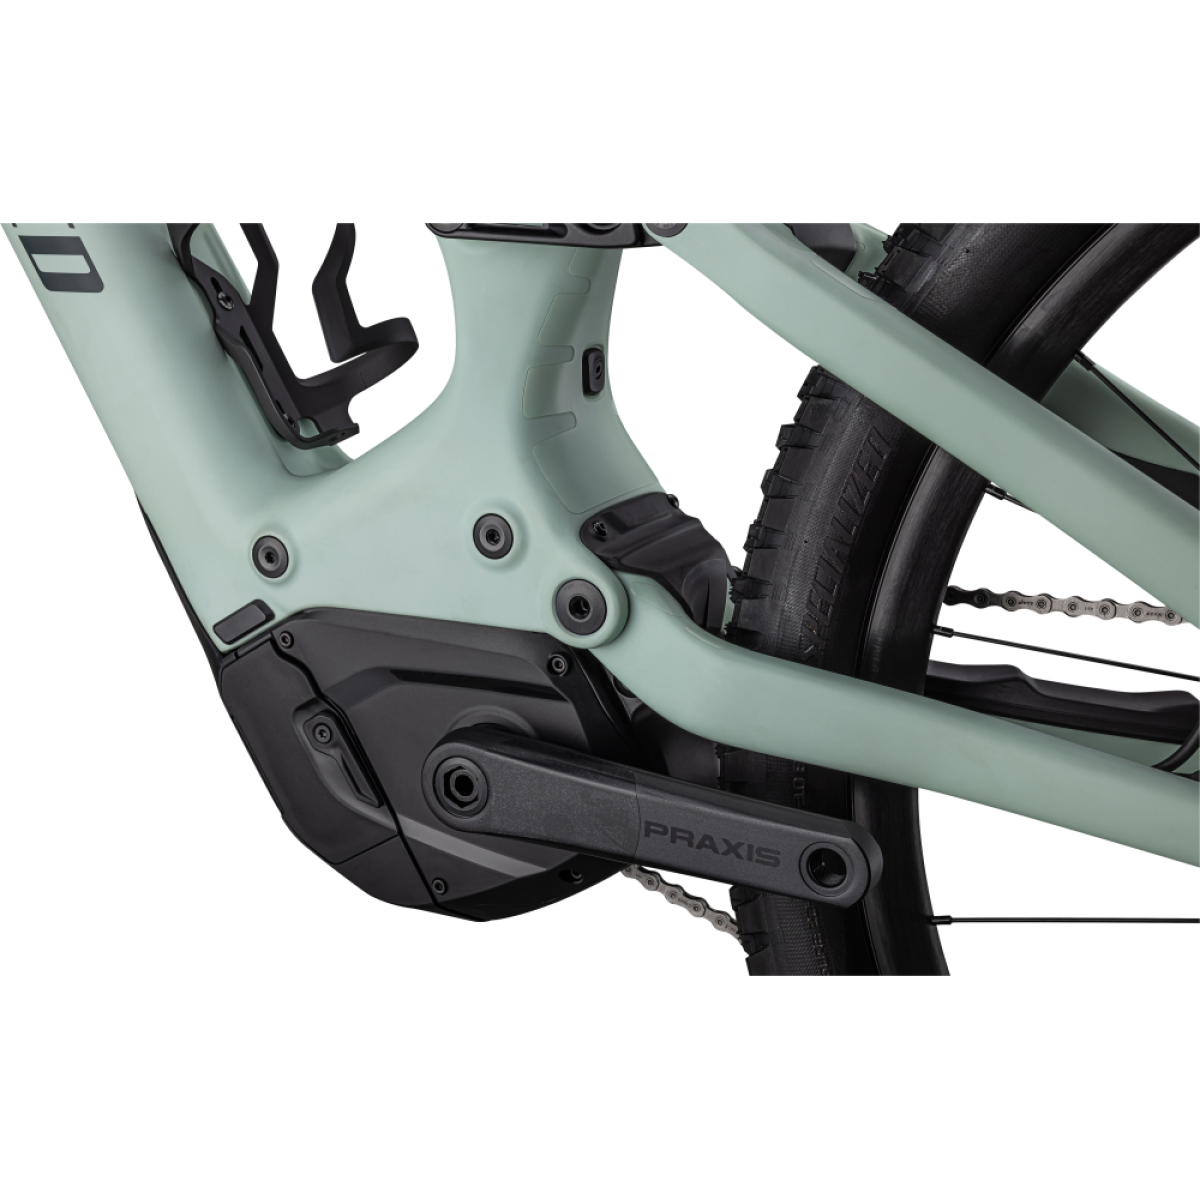 Specialized Turbo Levo Comp Carbon elektrinis dviratis / Satin White Sage